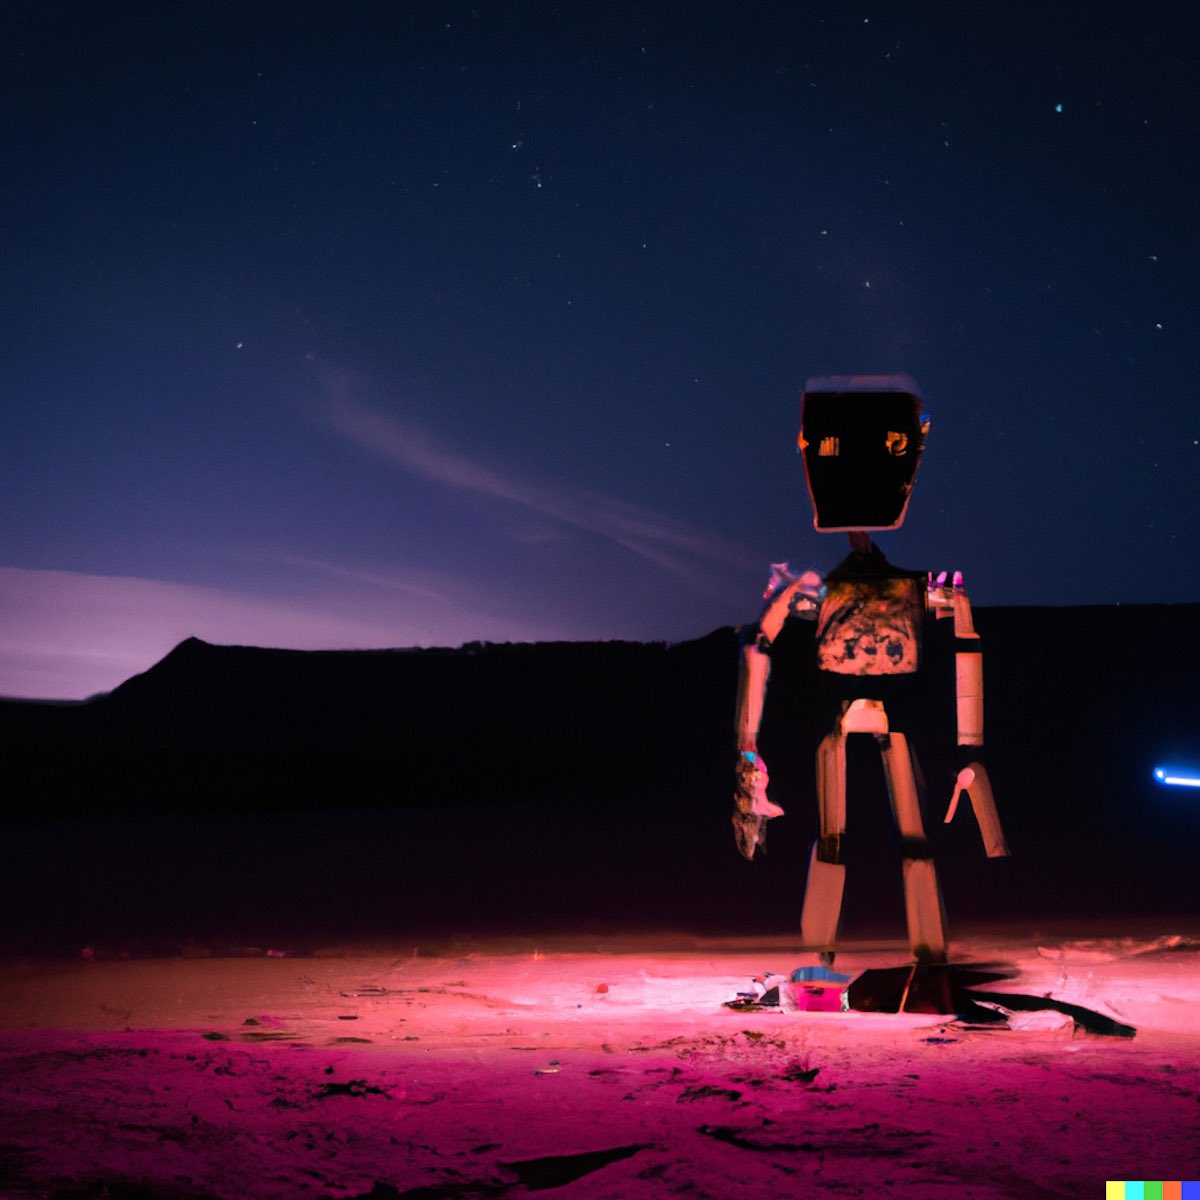 "Foto de una silueta de un Robot en una noche del desierto aprendiendo las constelaciones
estelares"
